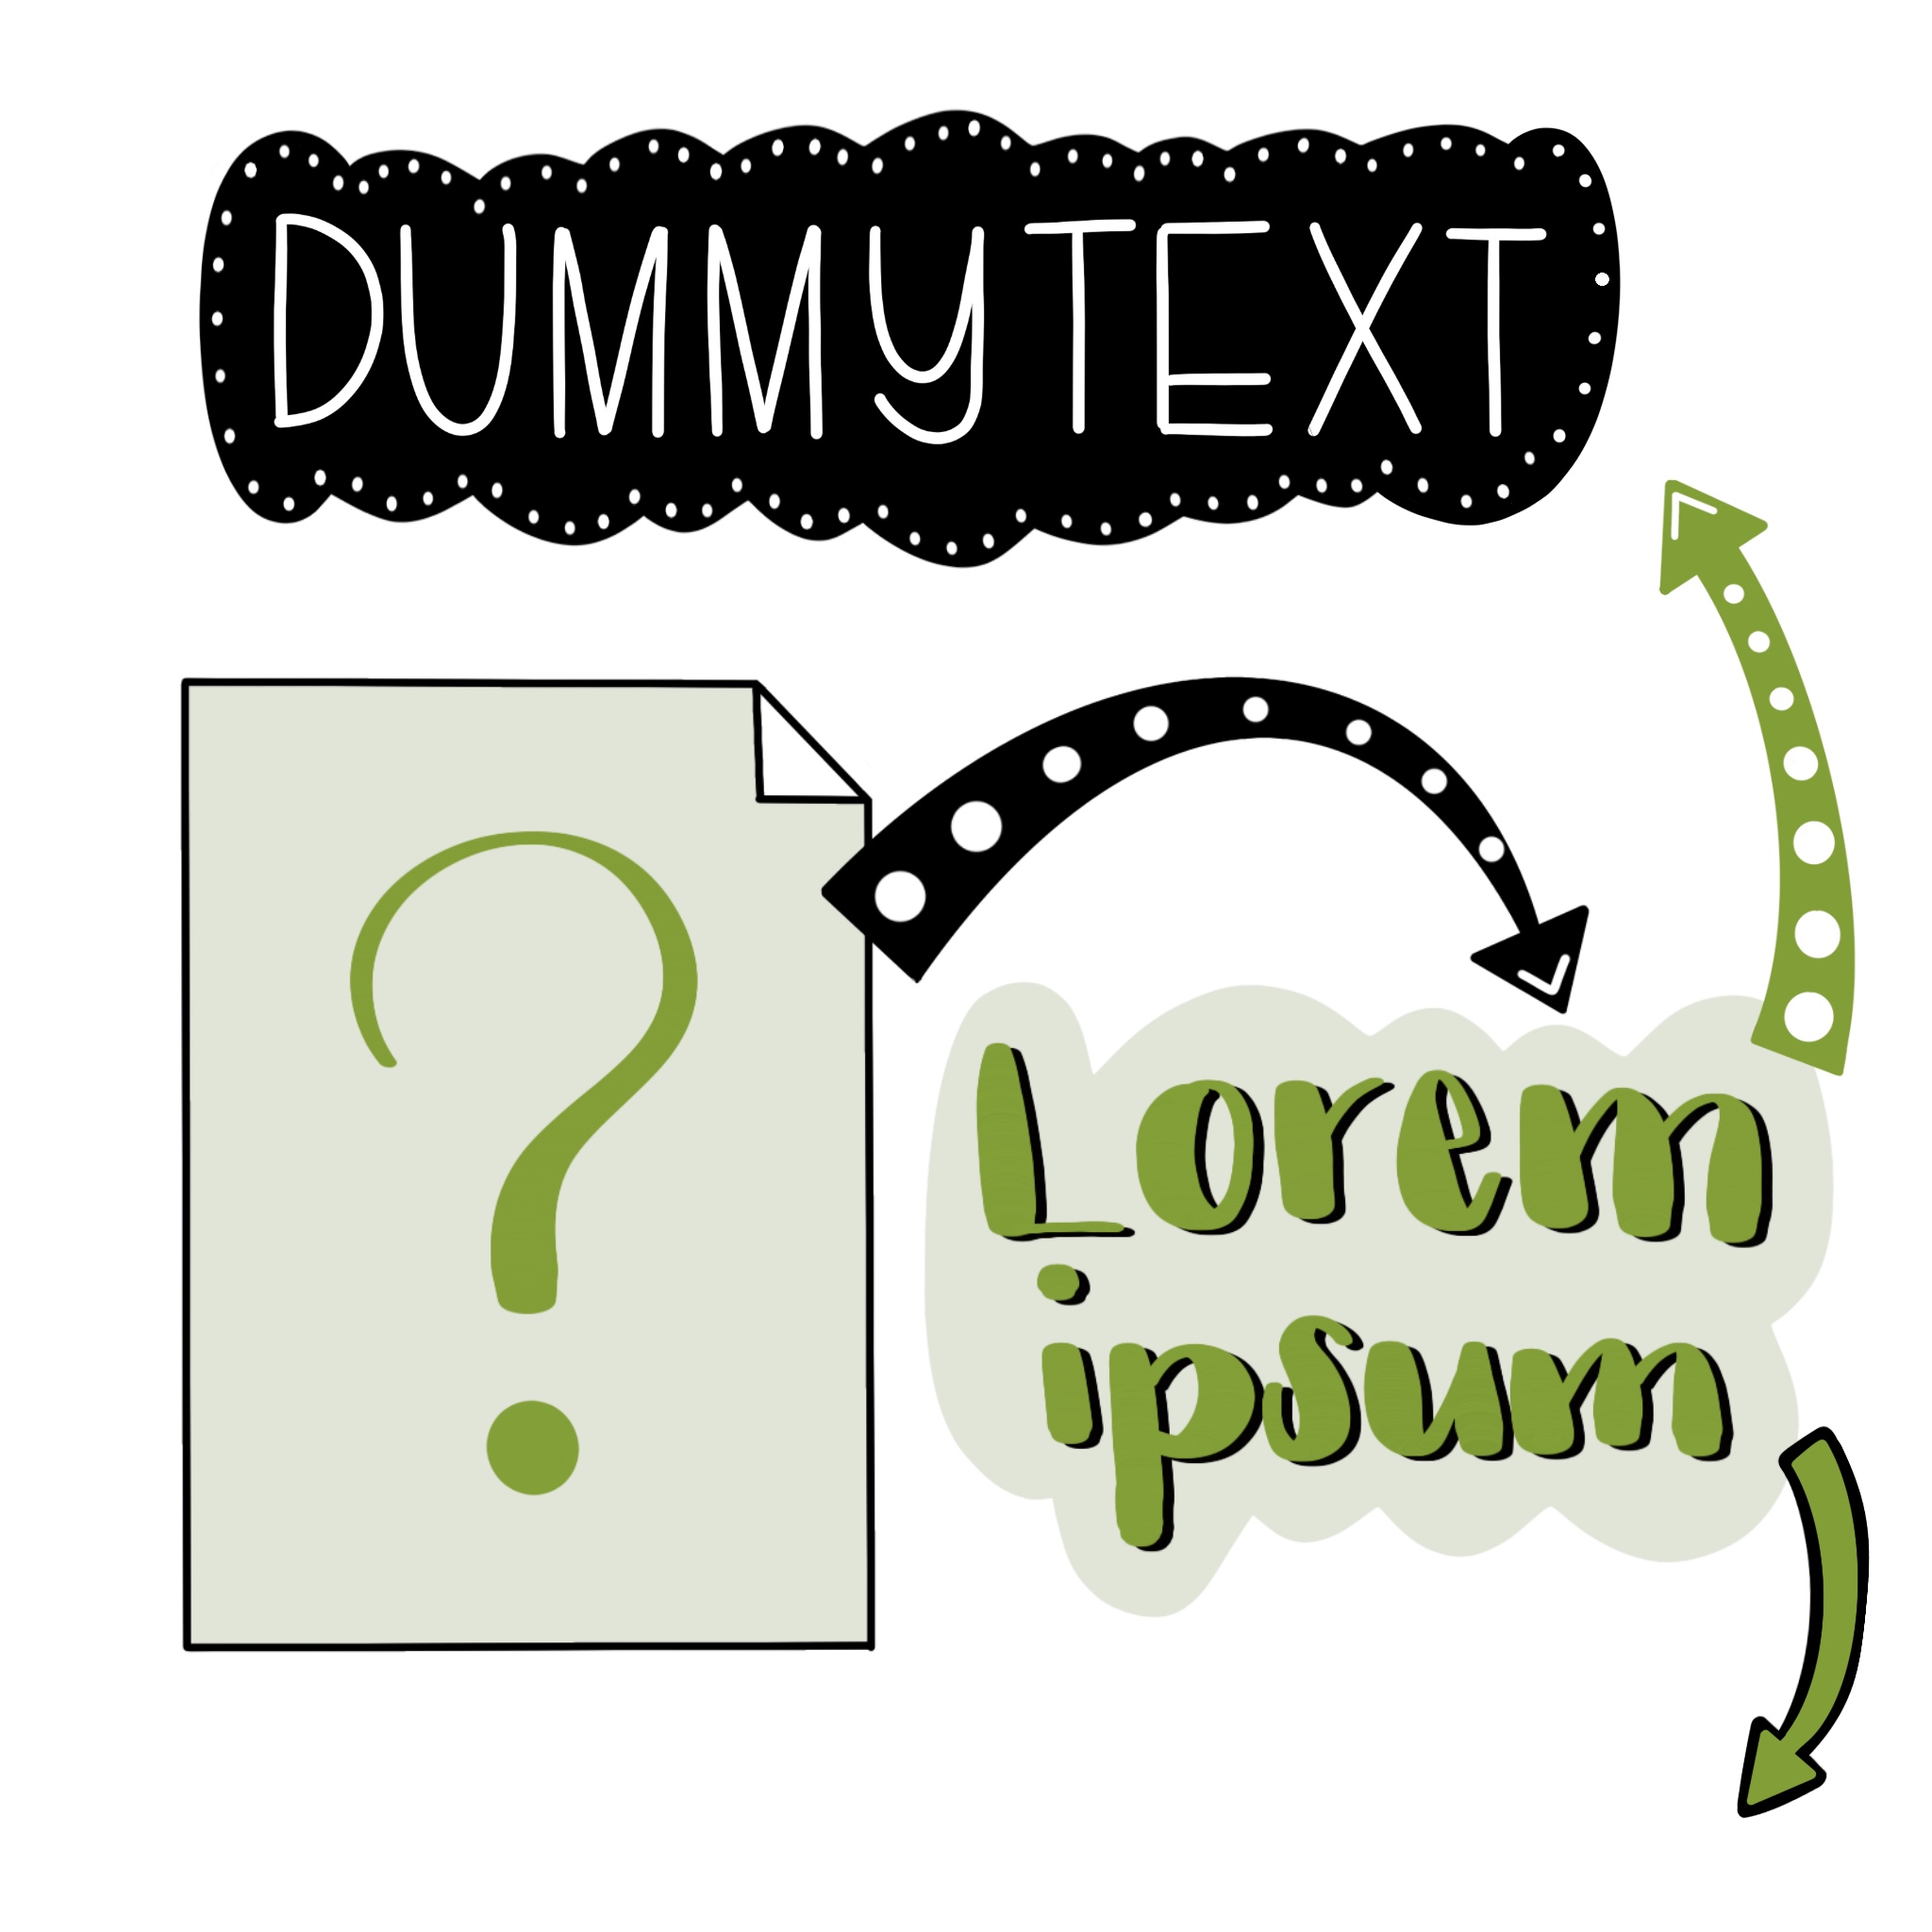 Was ist ein Dummytext?